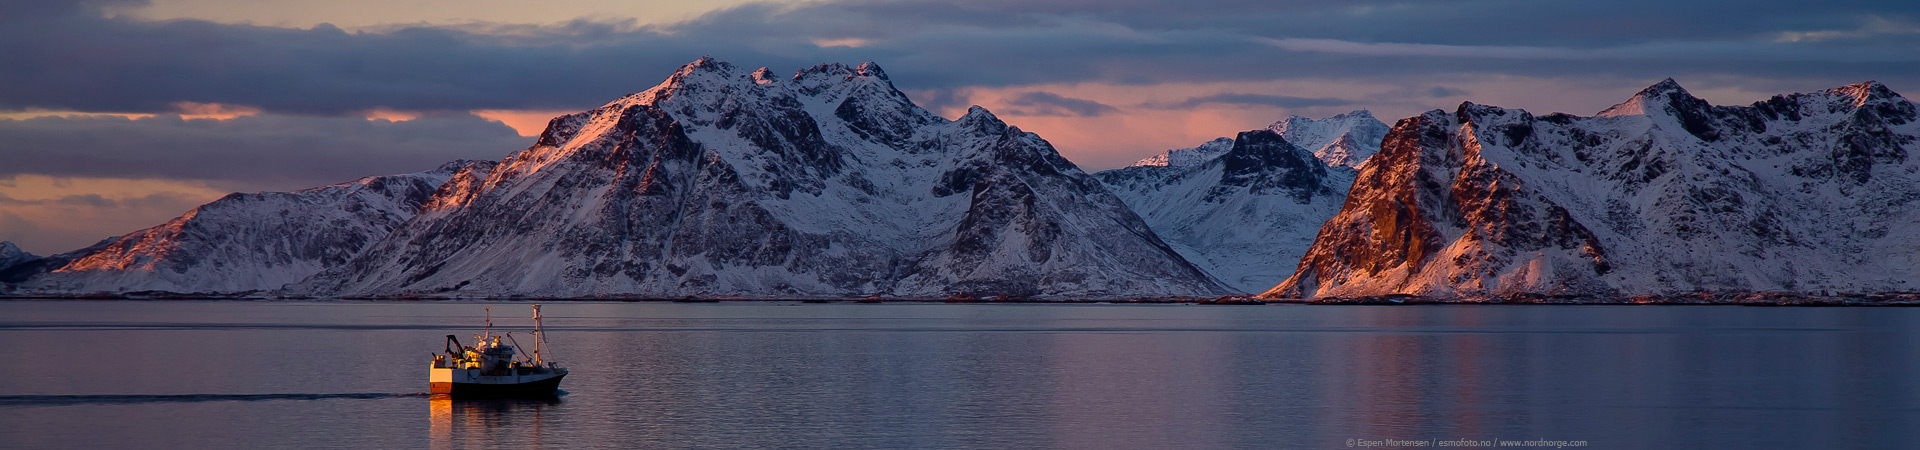 viaje a noruega islas lofoten Henningsvear puesta de sol montañas nevadas